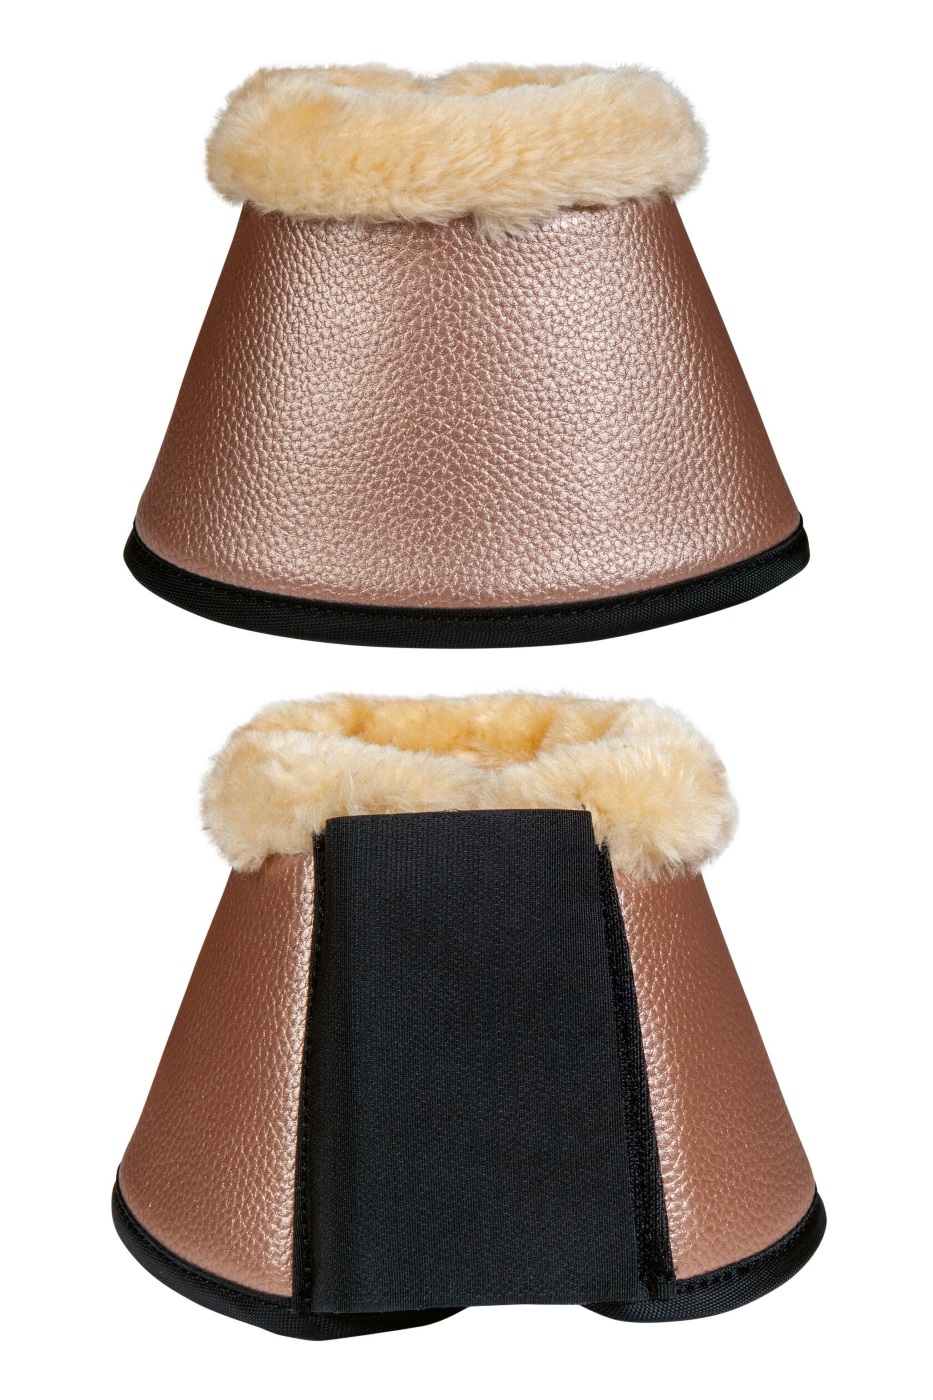 HKM Hufglocken -Comfort Premium Fur- - orange - XL - 2